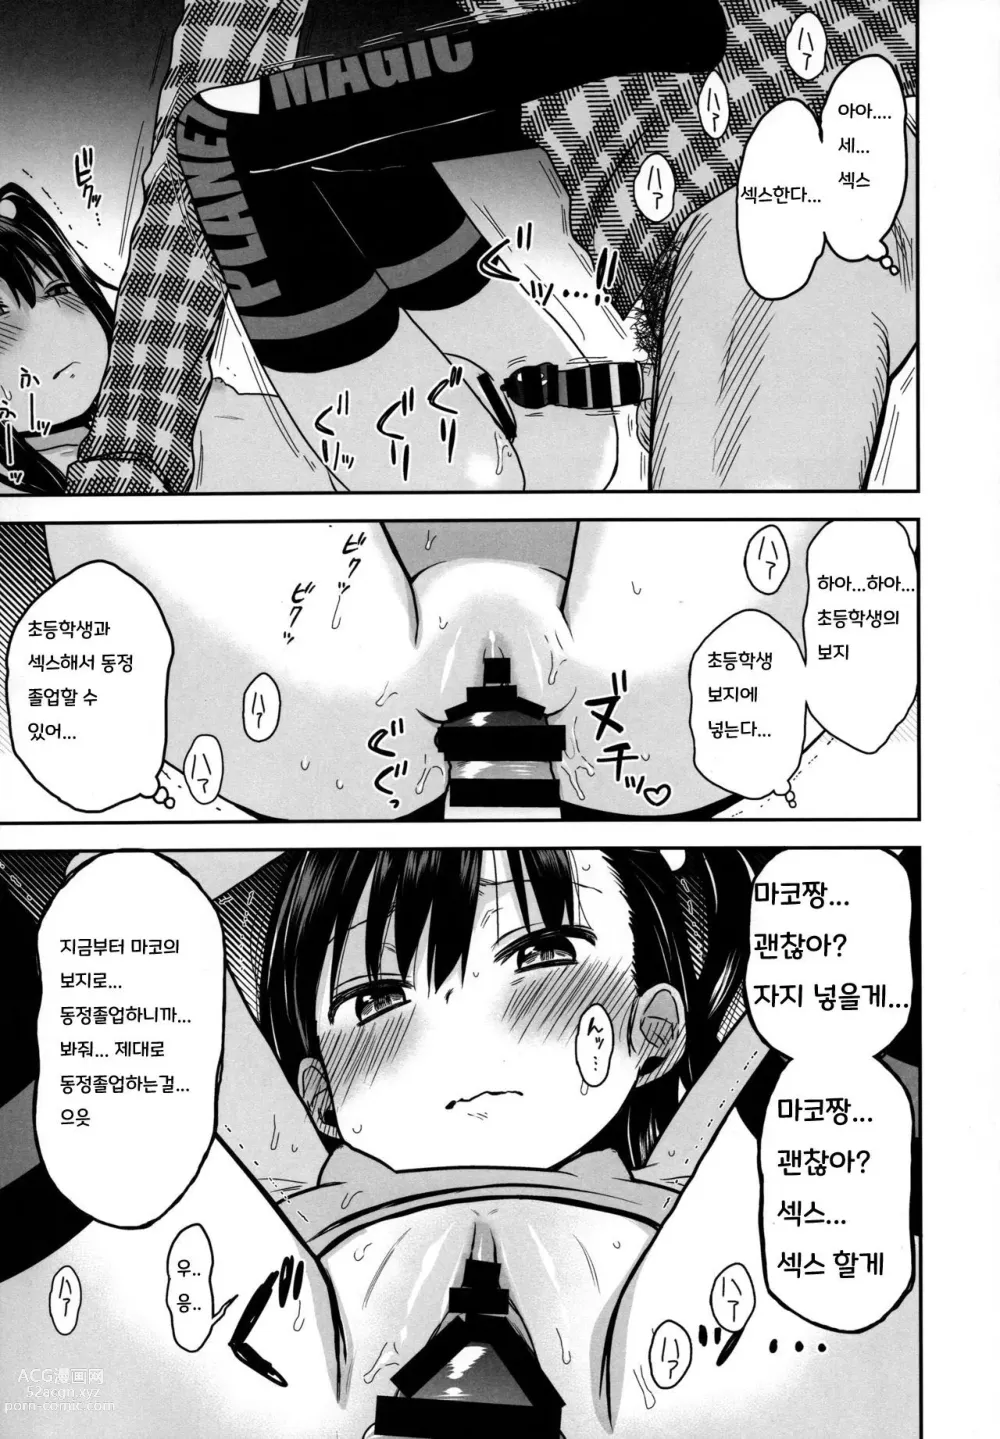 Page 25 of doujinshi Tonari no Mako-chan Season 2 Vol. 2